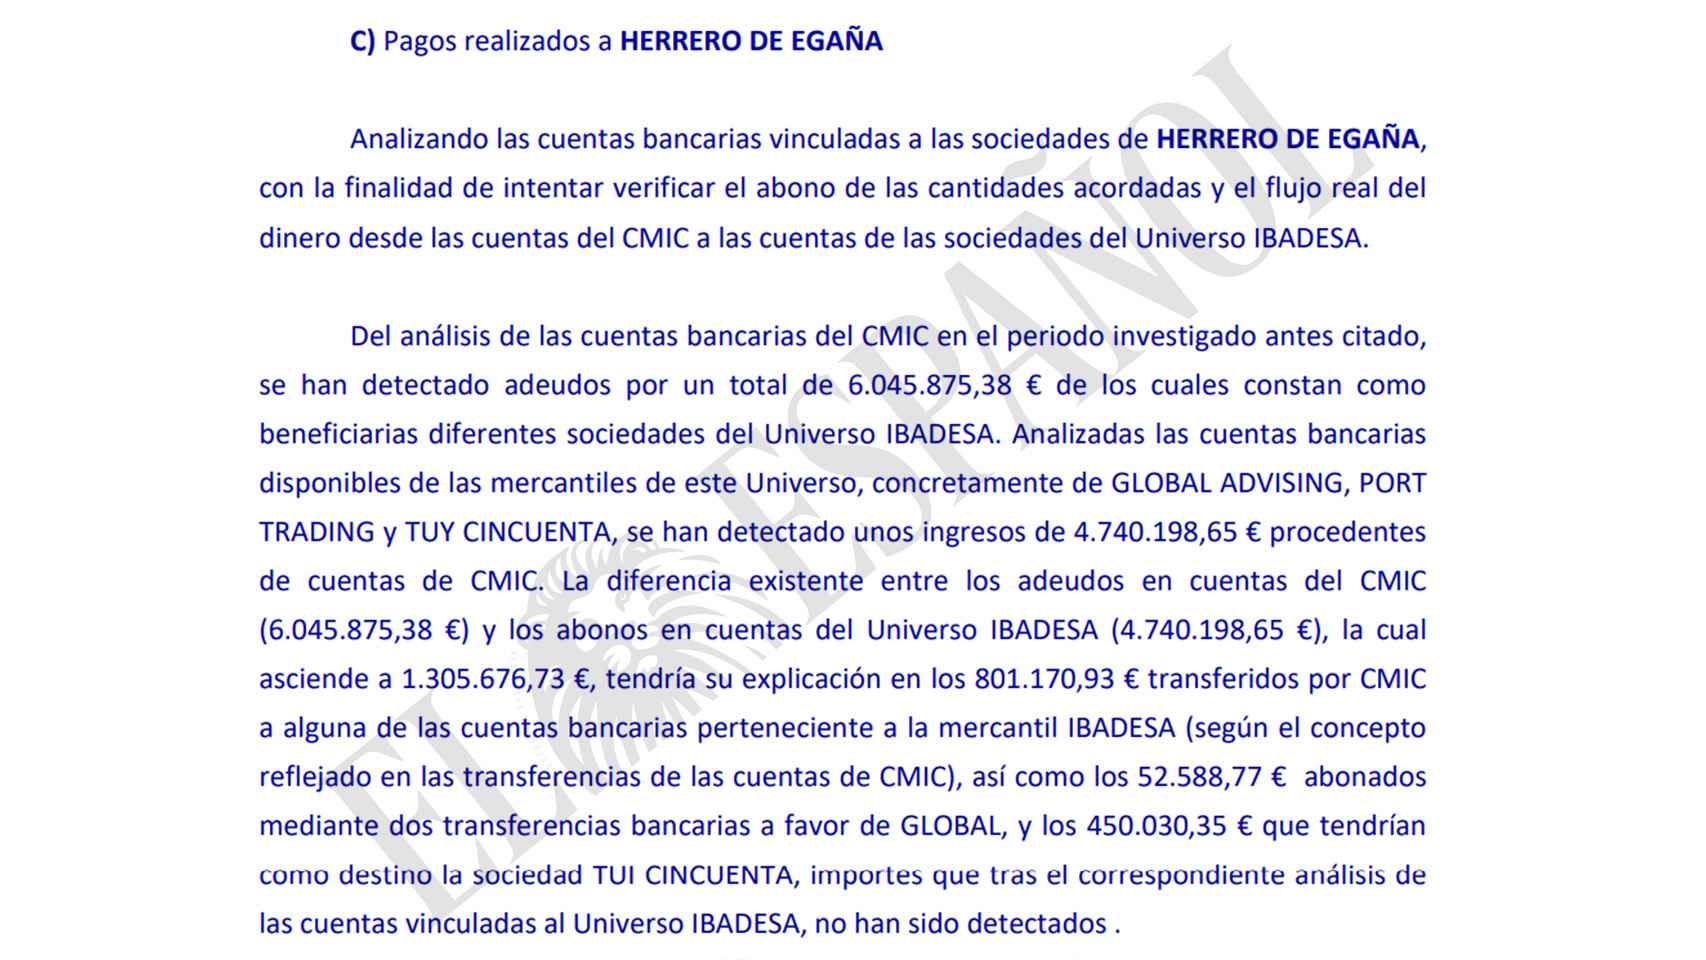 Las empresas de Herrero de Egaña ingresaron al menos 4,7 millones por el mercado construido en Angola.